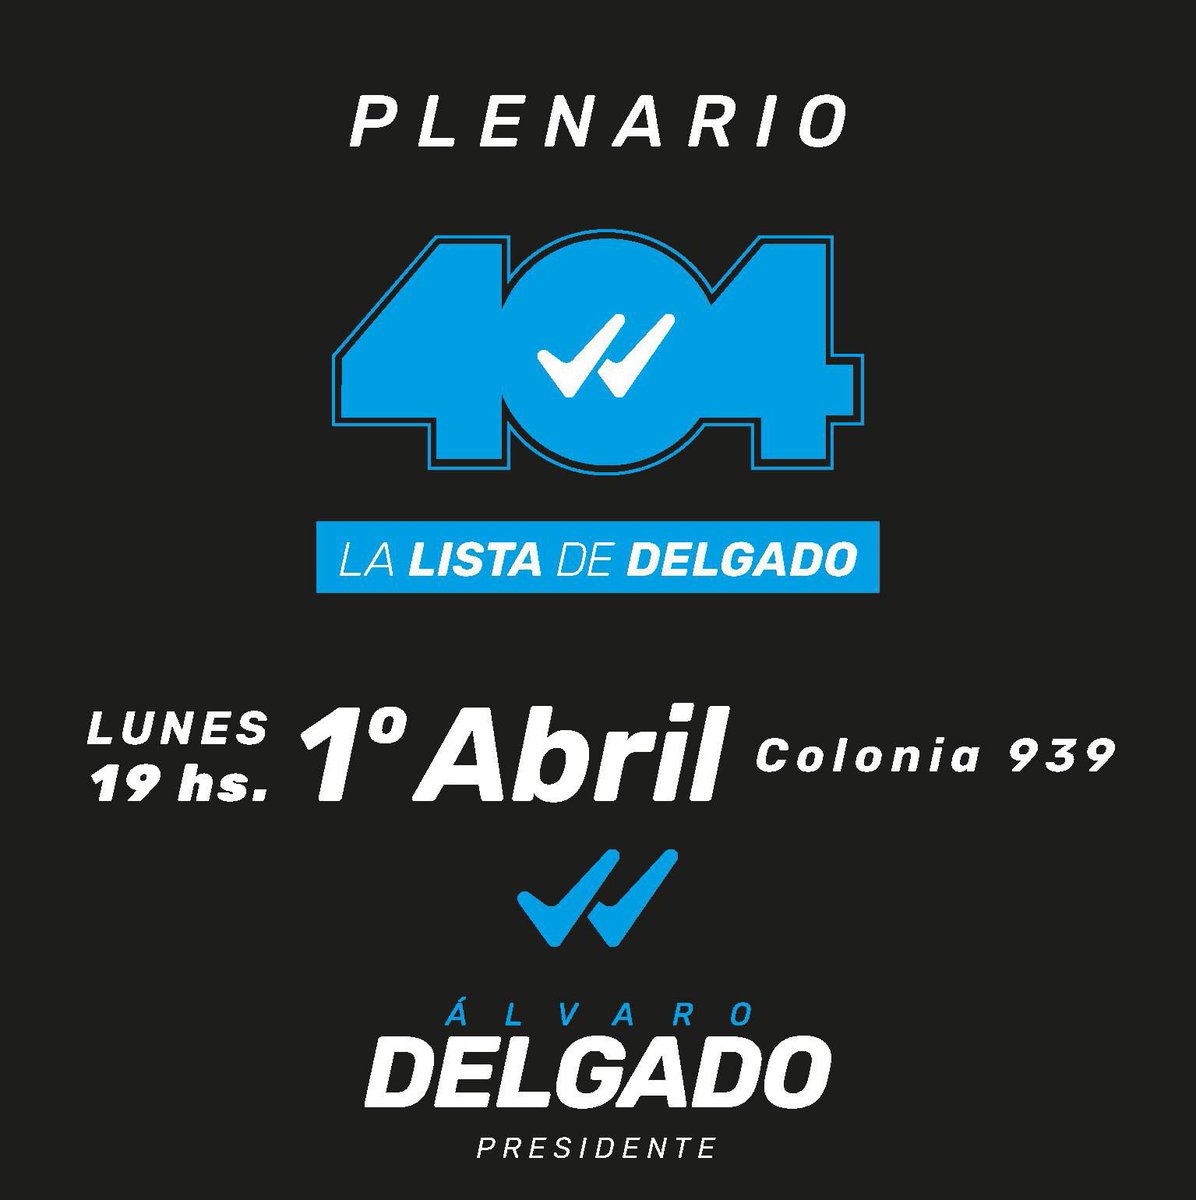 [Hoy] 19:00 hs Plenario de @AireFresco_404 - La lista de @AlvaroDelgadoUy Colonia 939 Los esperamos ! #UruguayParaAdelante